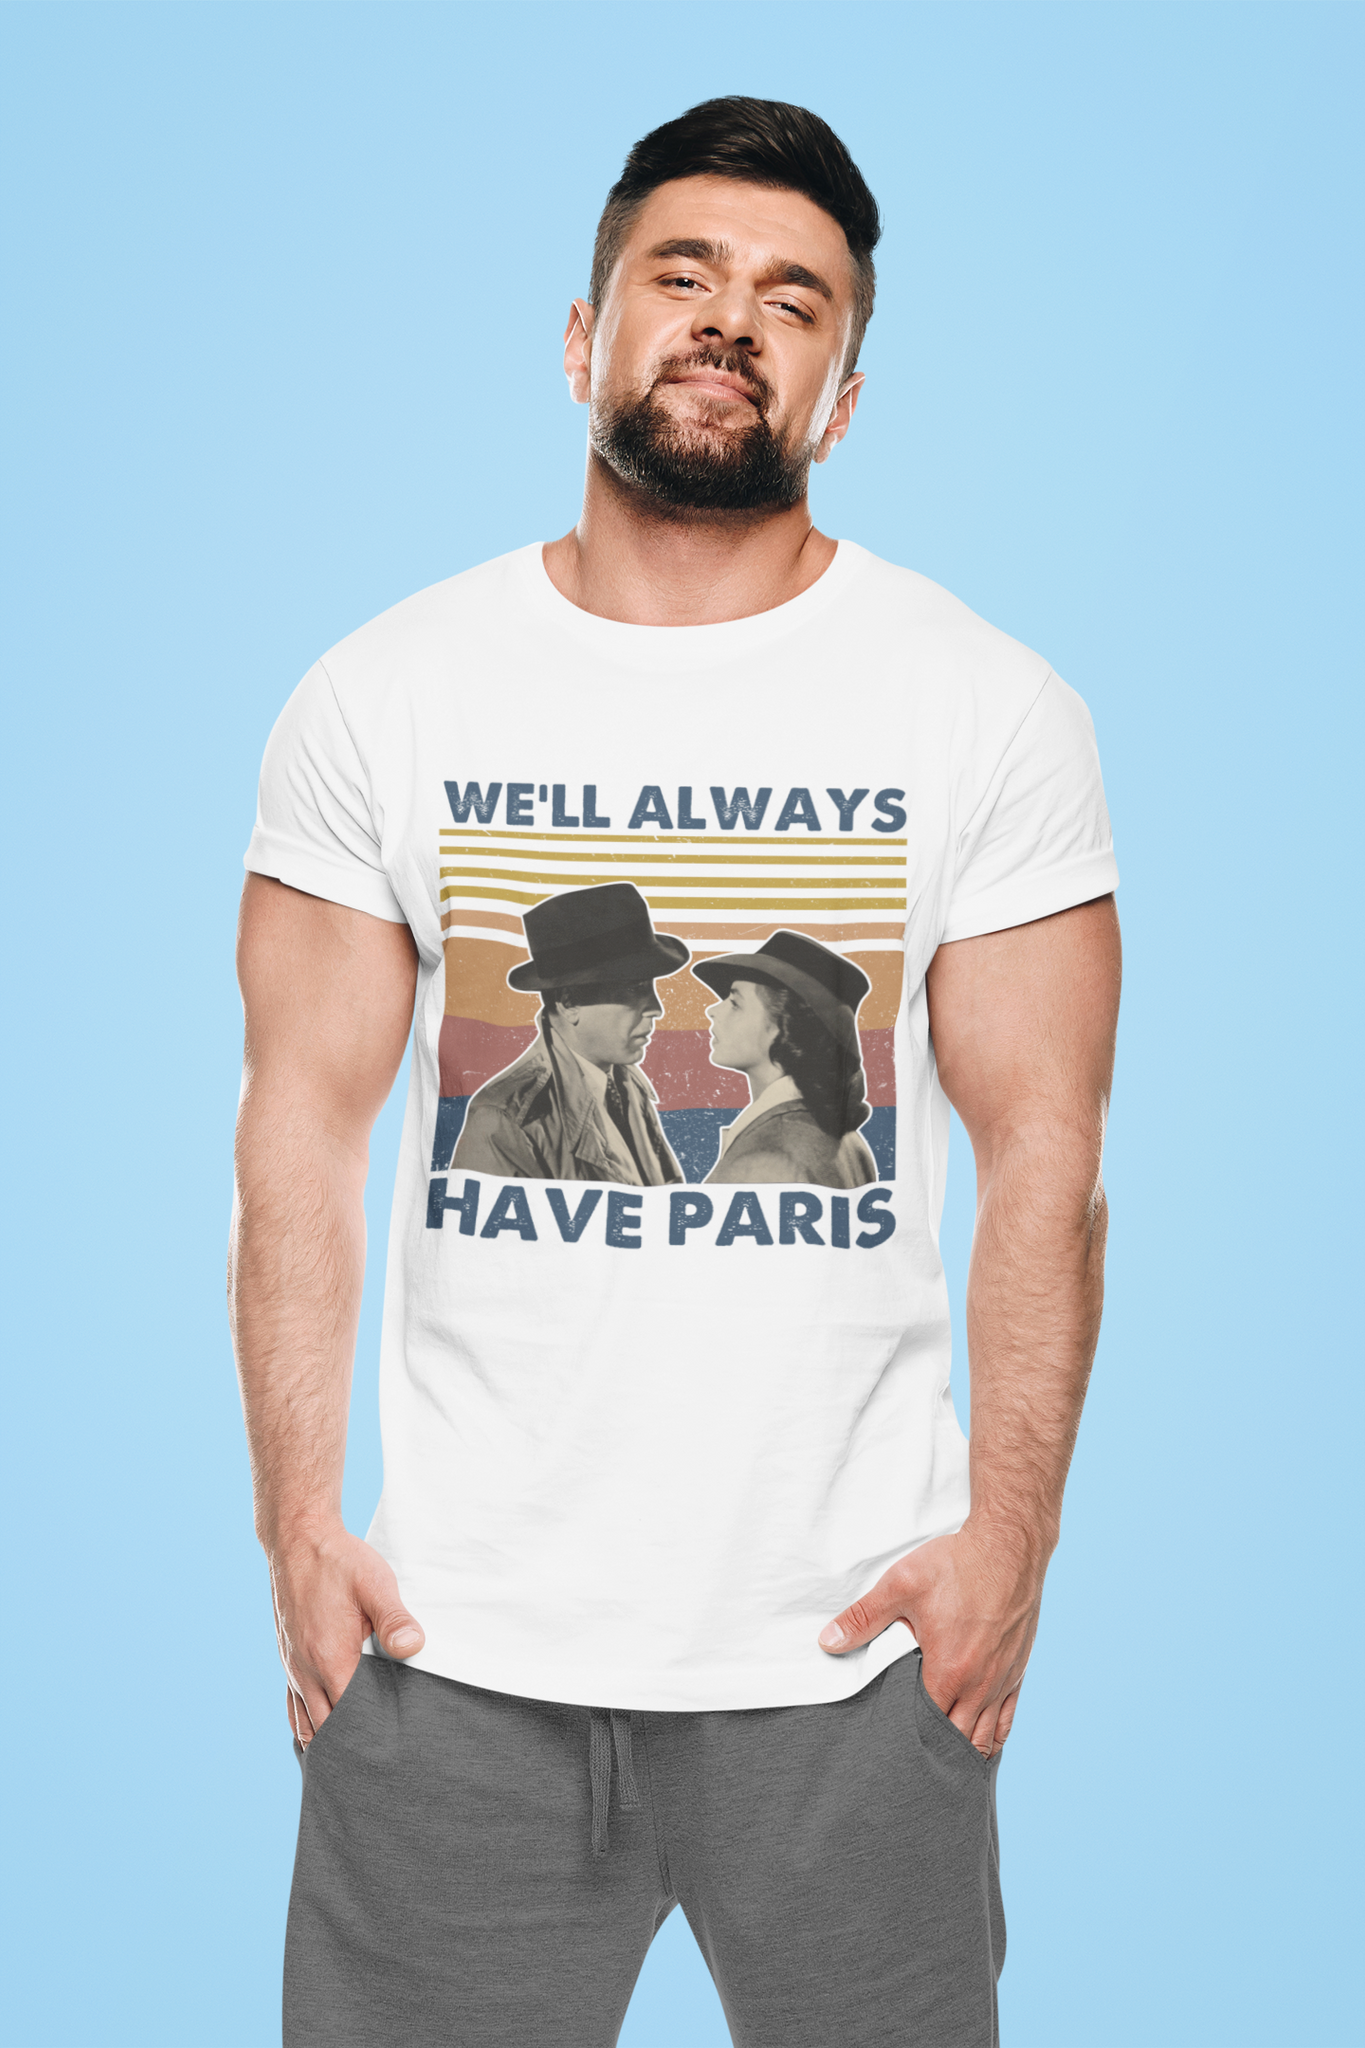 Casablanca Vintage T Shirt, Rick Blaine Ilsa Lund Tshirt, Well Always Have Paris T Shirt